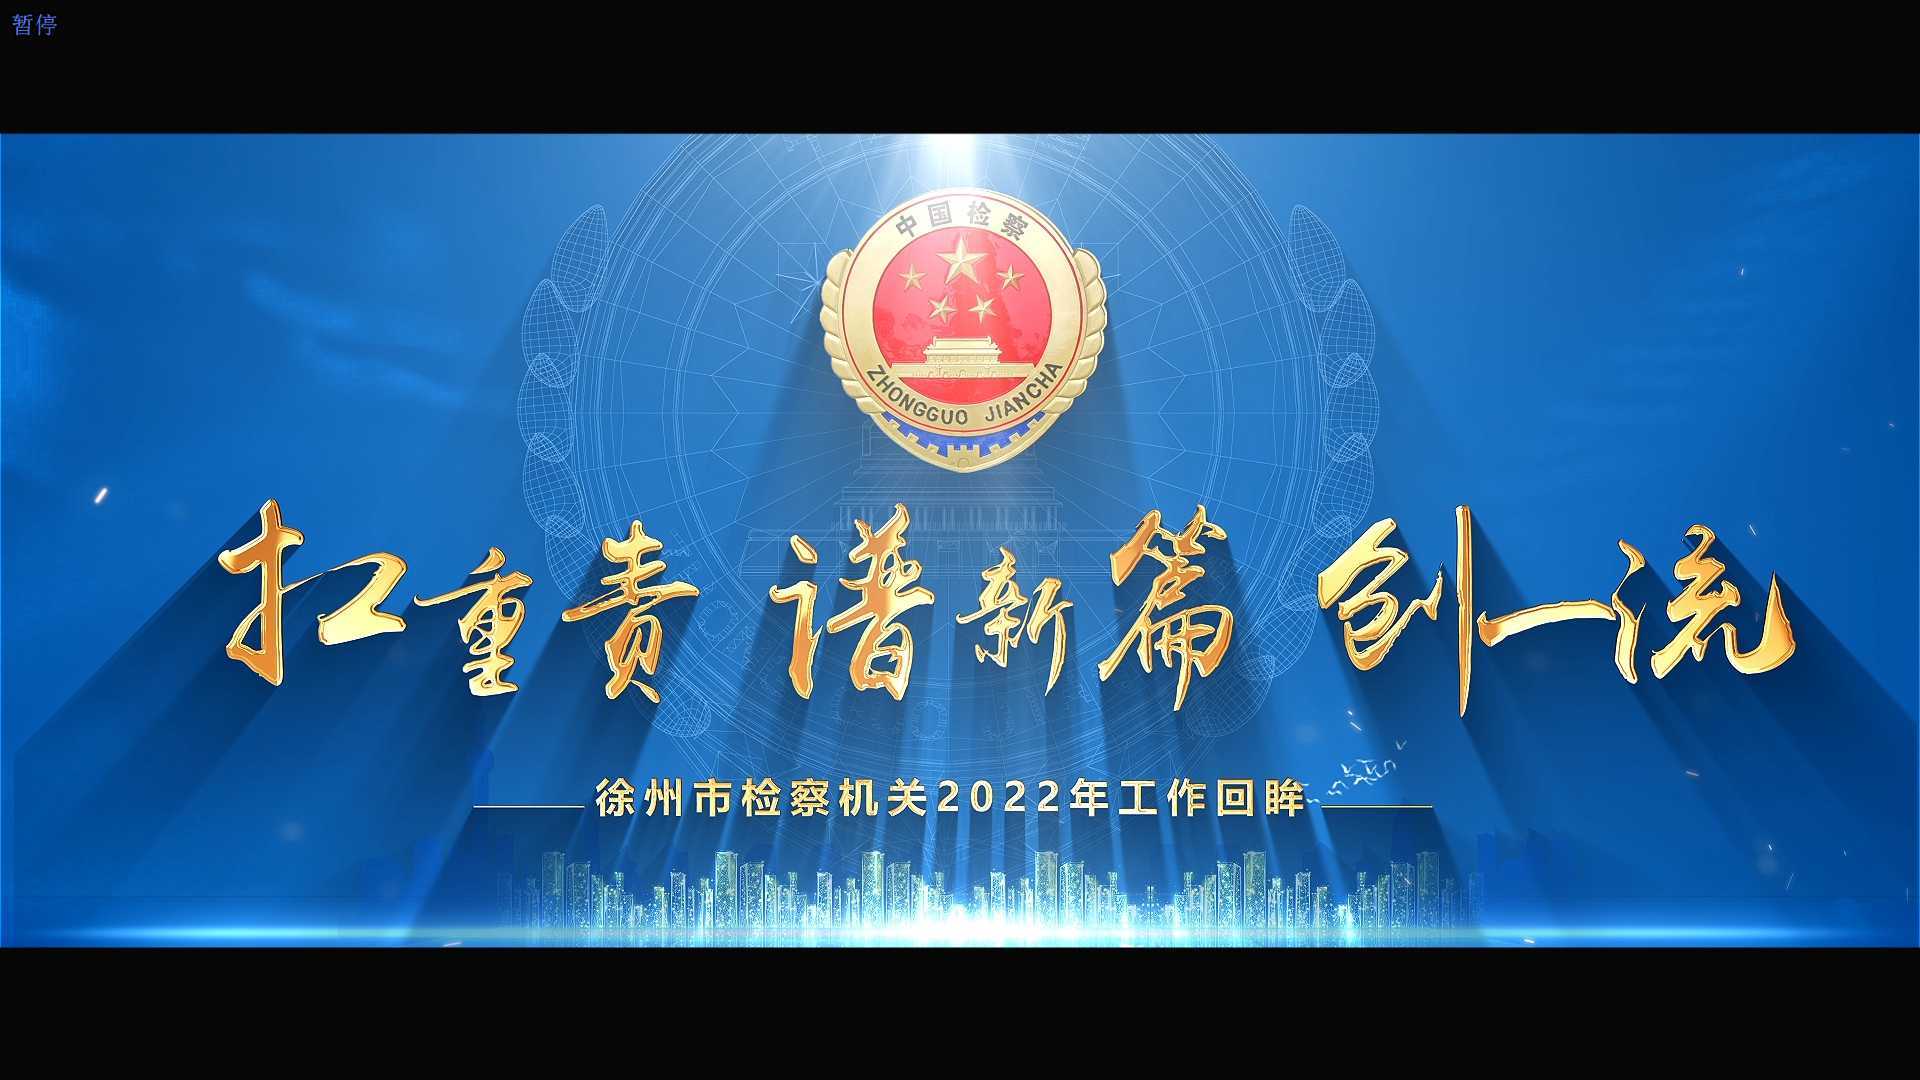 徐州市检察机关2022年工作回眸 初稿